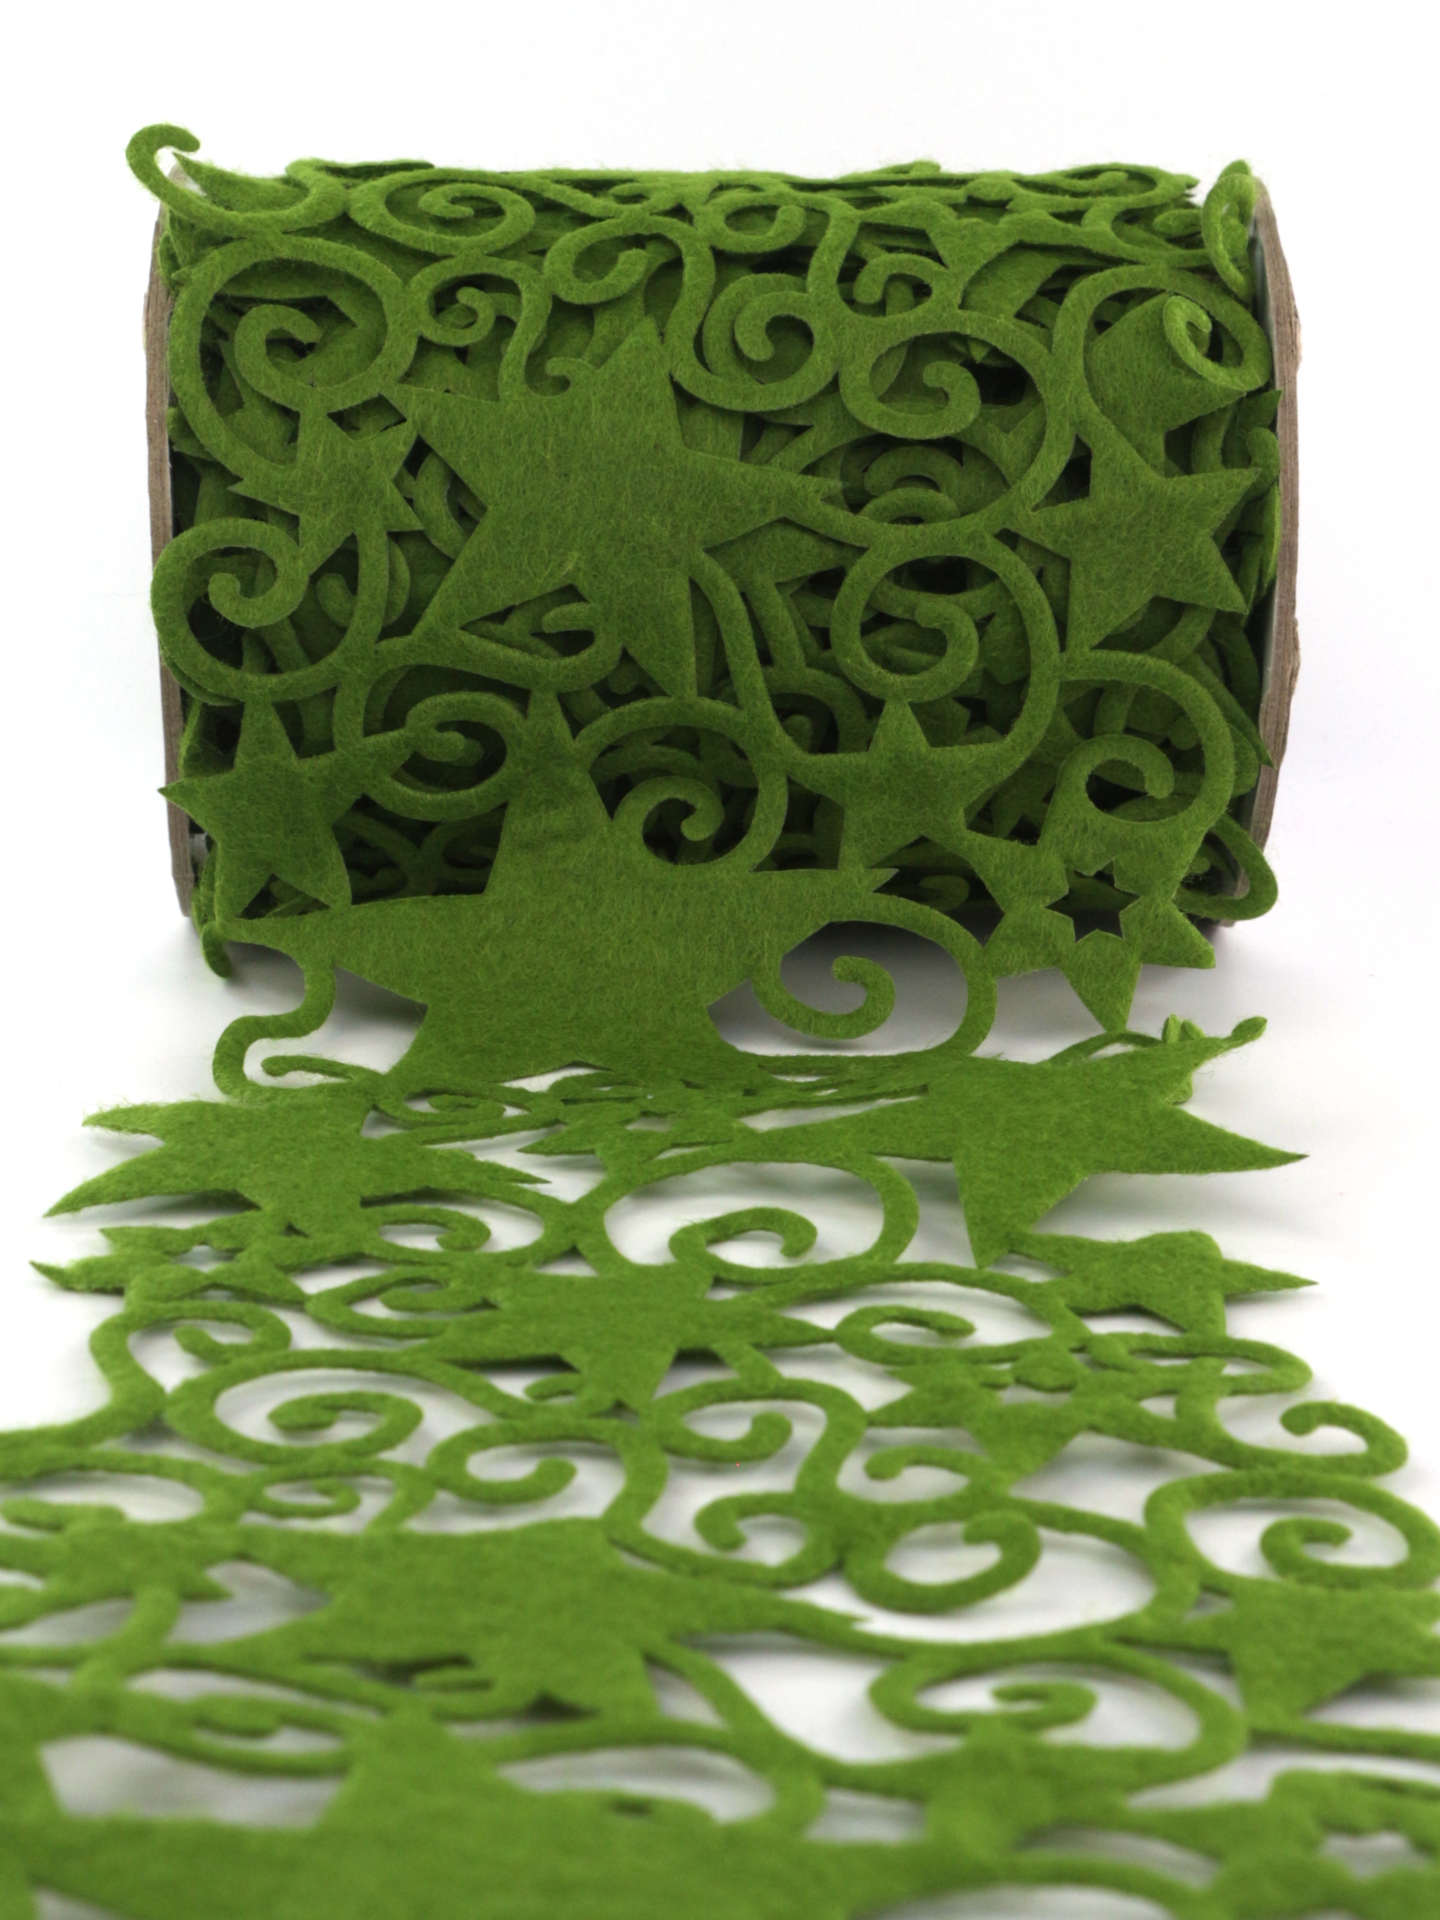 Filz-Tischband Sterne, grün, 150 mm breit, 5 m Rolle - geschenkband-weihnachten, weihnachtsbaender